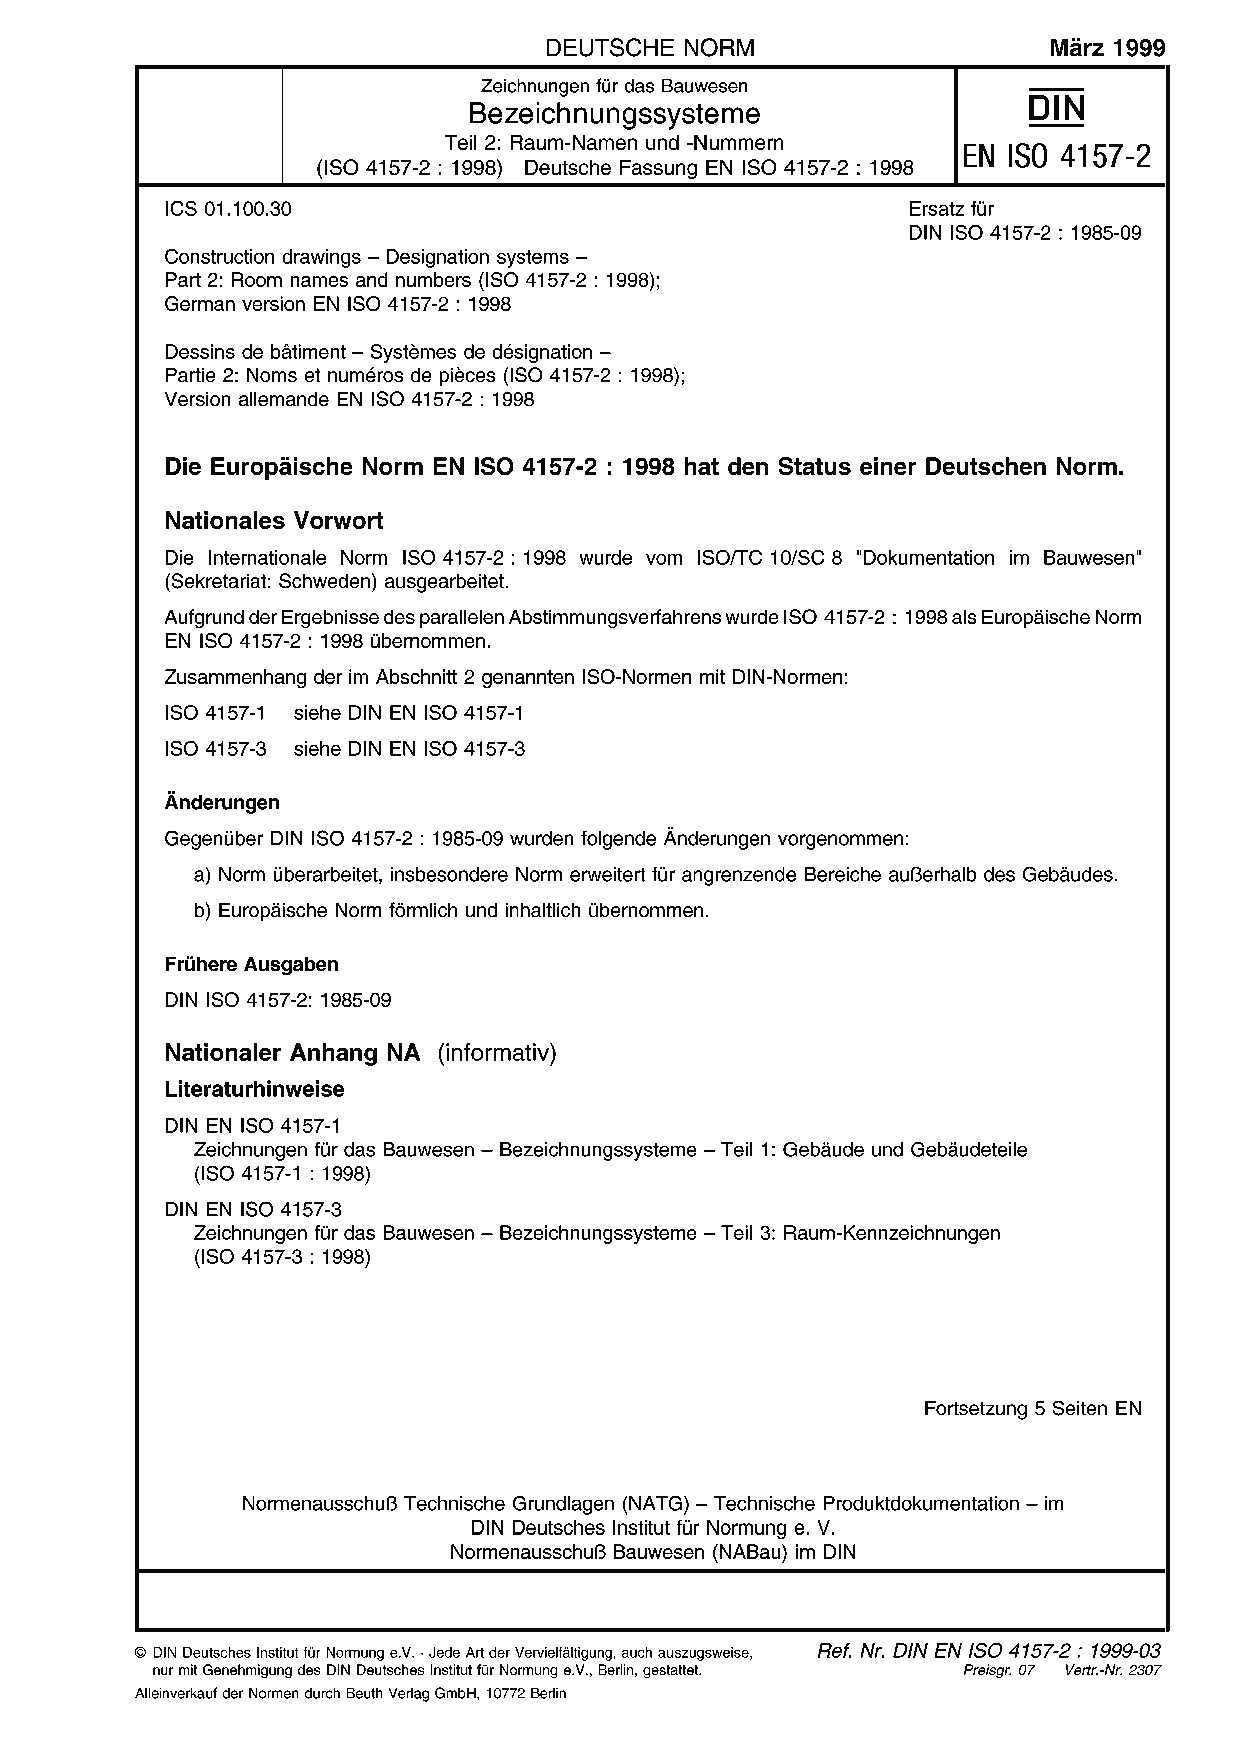 DIN EN ISO 4157-2:1999